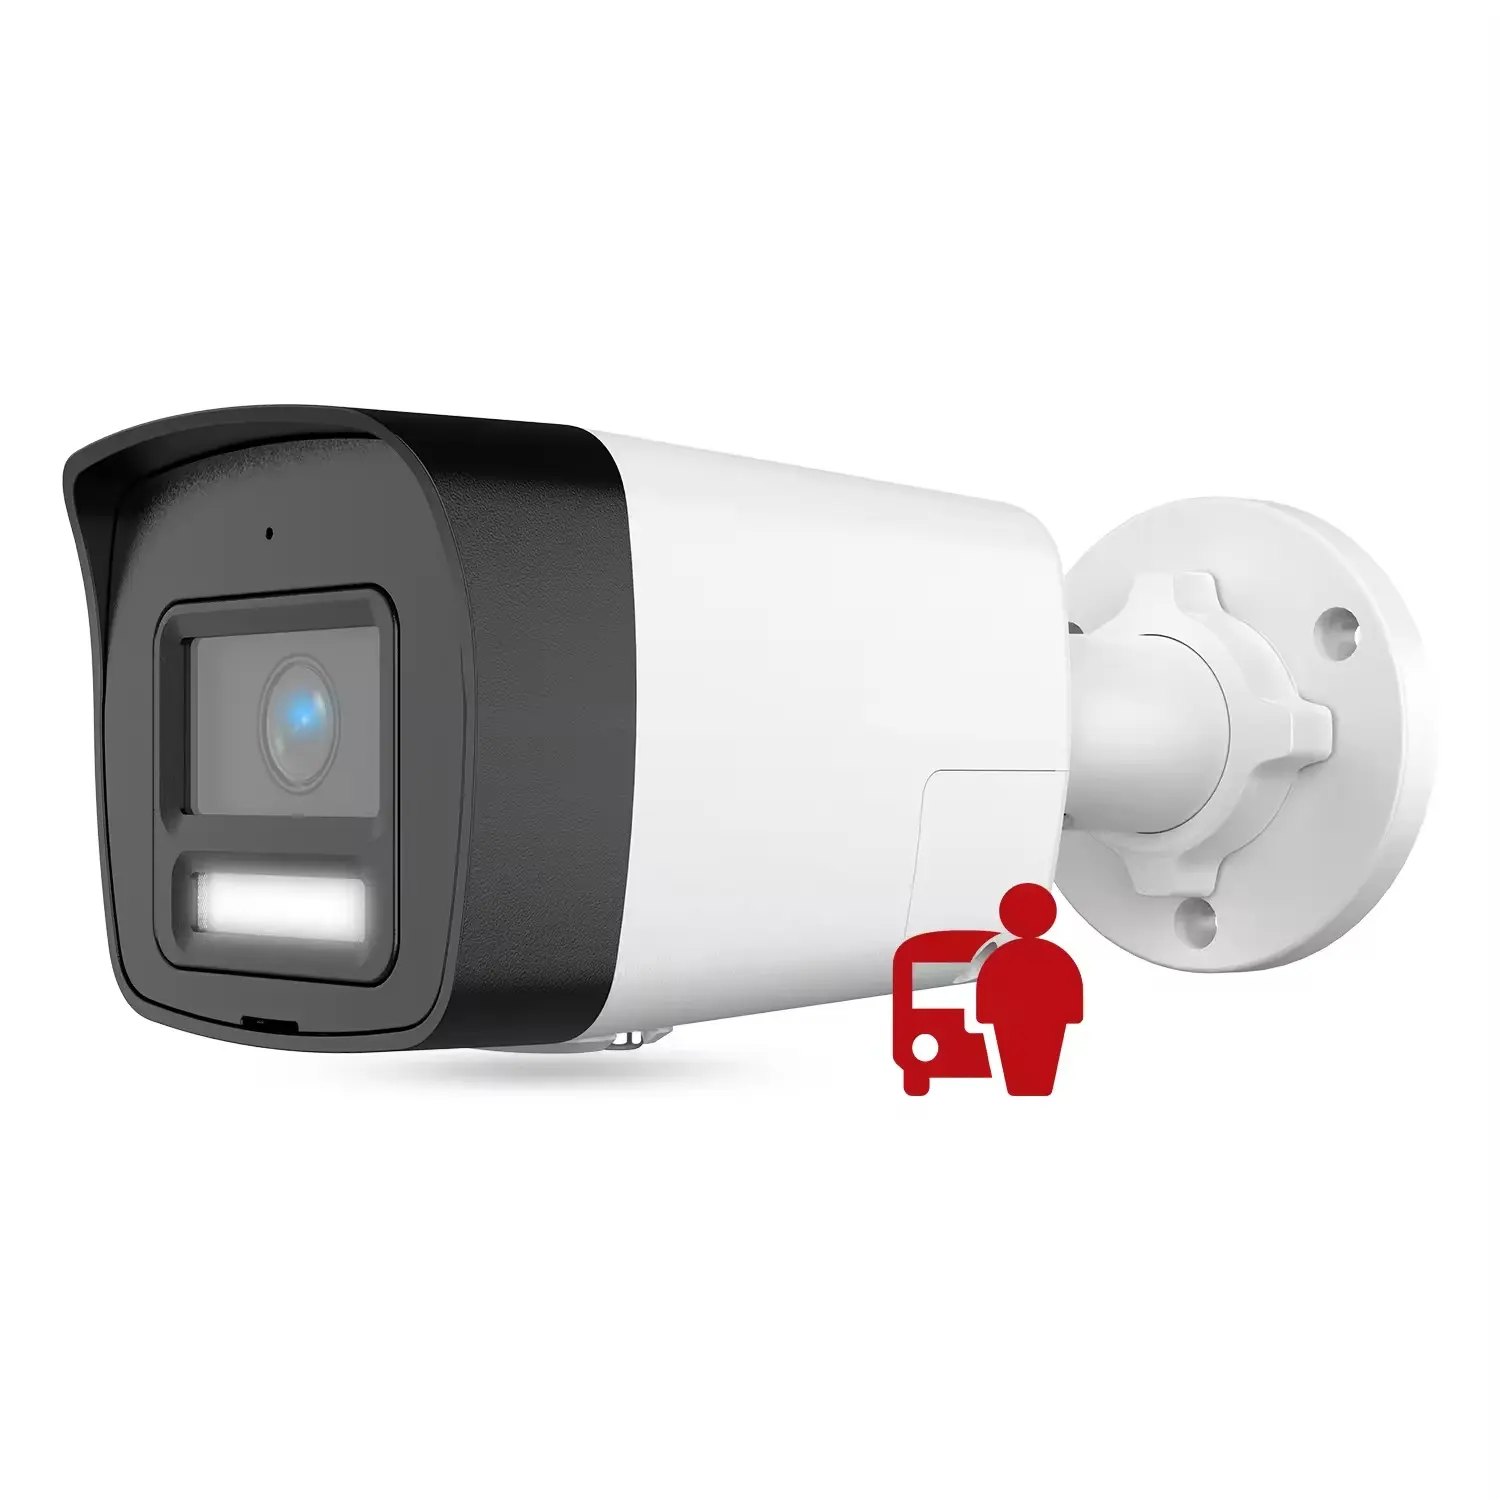 HK 4K 8MP caméra IP CCTV balle POE couleur double lumière vision nocturne détection humaine/véhicule prise en charge de la fente pour carte audio WDR